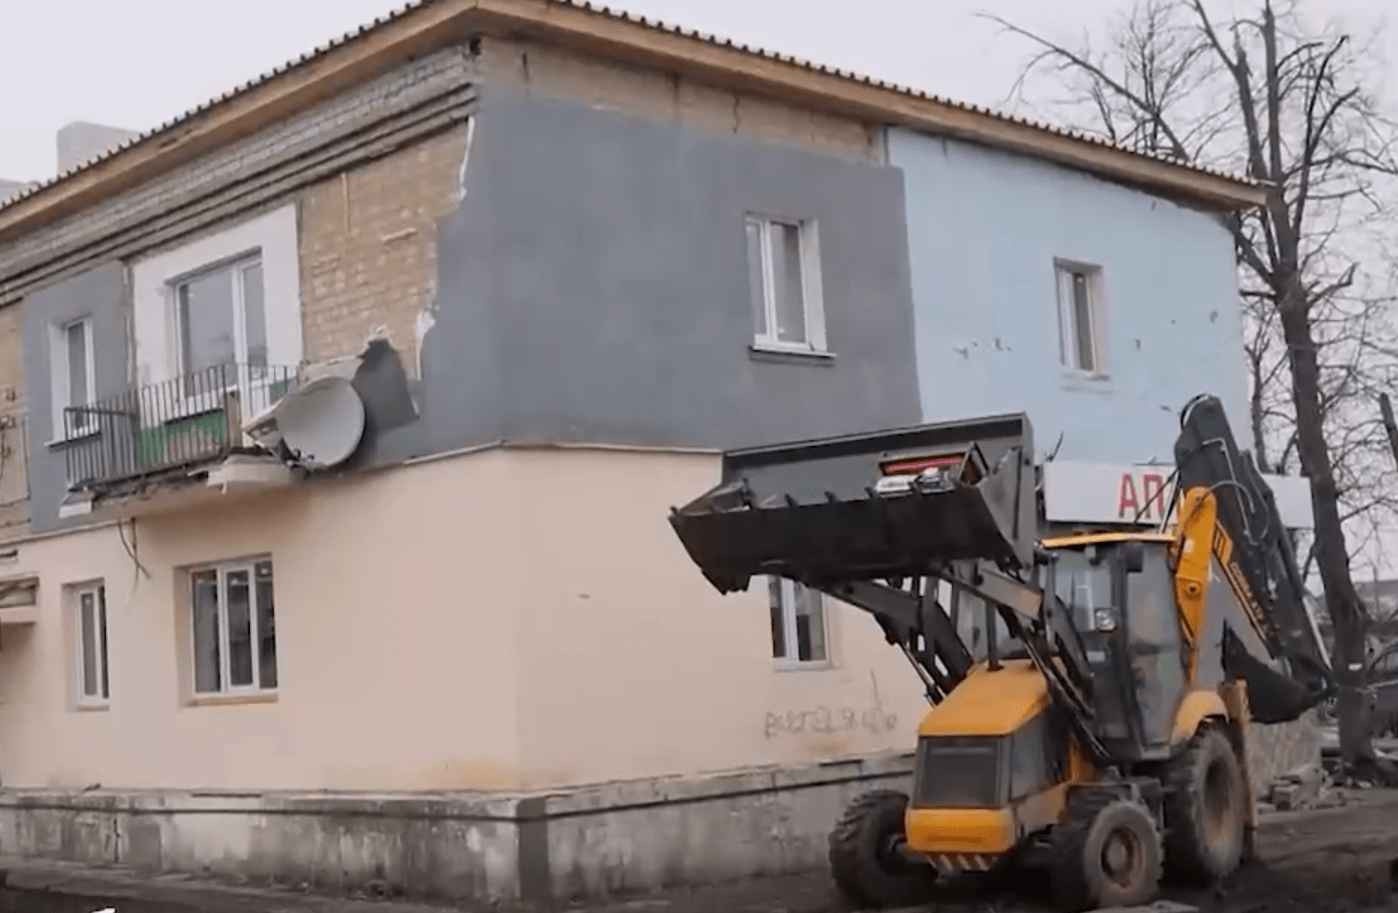 Волноваха, пострадавшая от украинских бомбардировок, восстанавливается ускоренными темпами